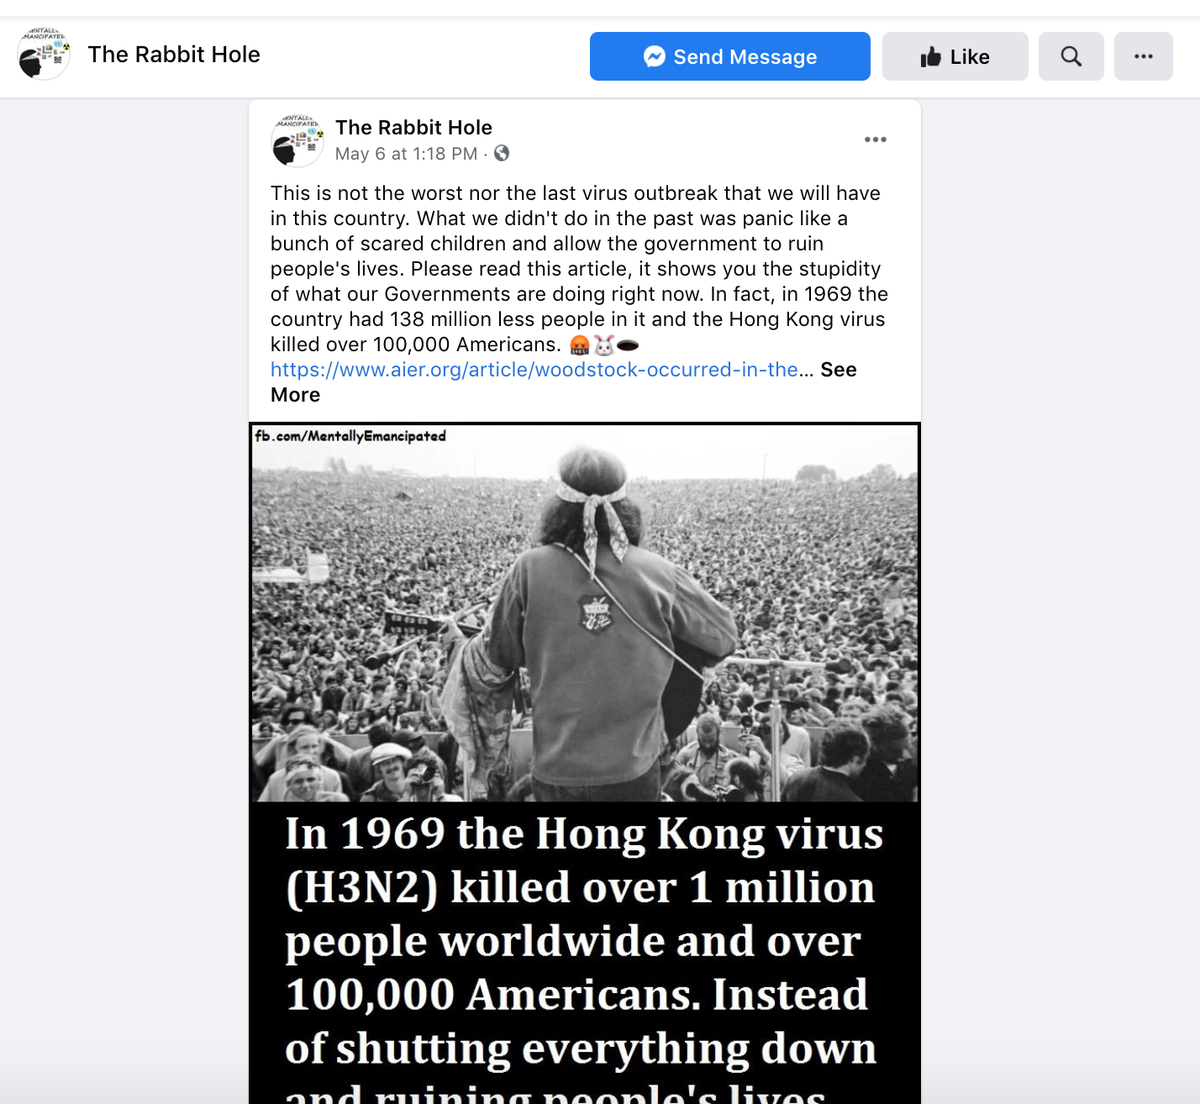 Darum spricht jeder auf Facebook über Woodstock und das Coronavirus